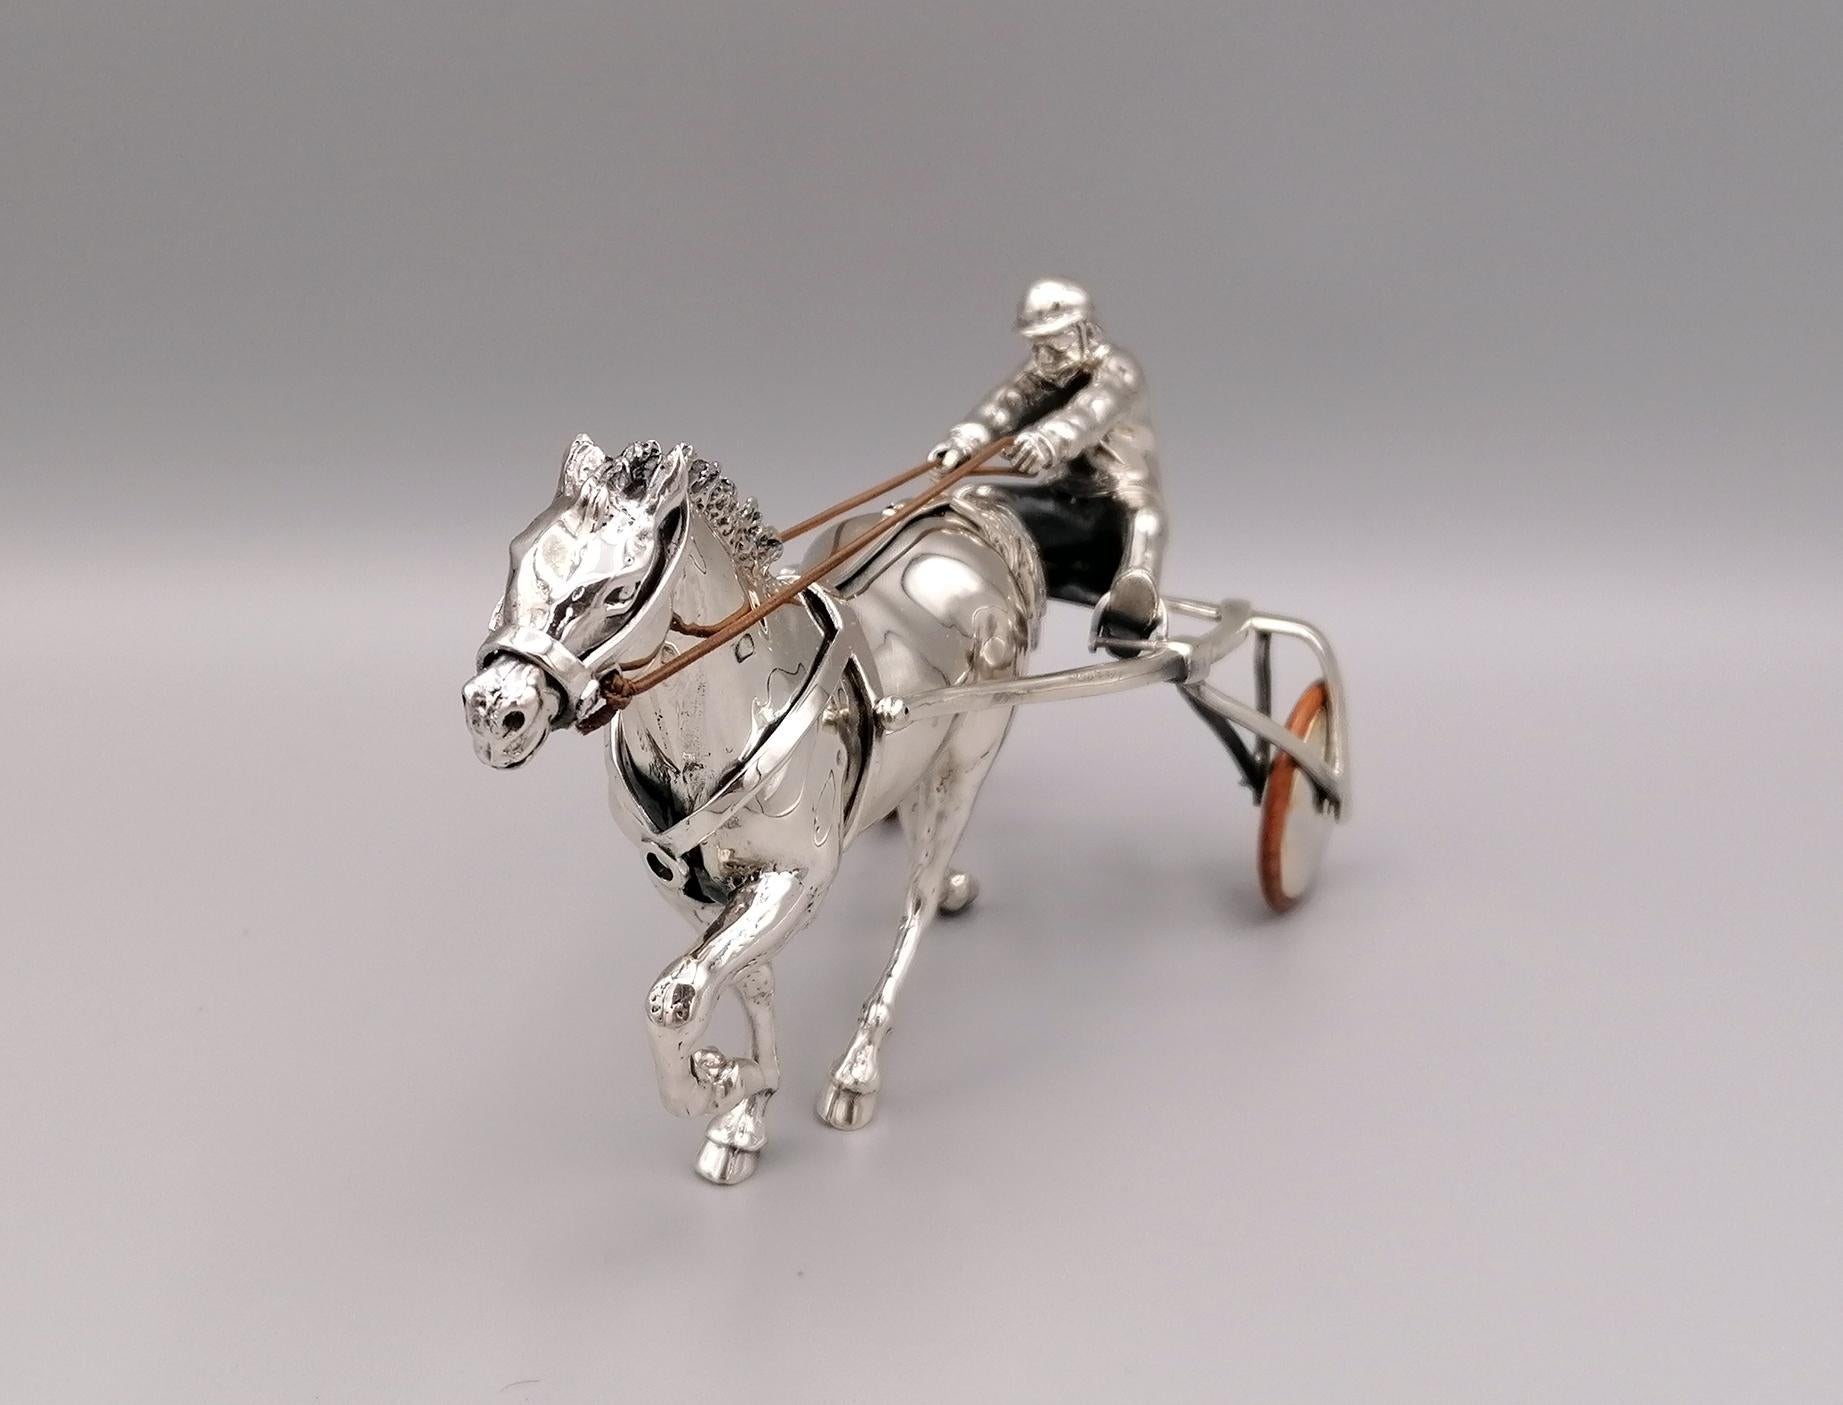 Sulky de plata maciza fabricado en Italia con caballo y conductor.
El sulky, el caballo y el conductor están hechos con el método de fundición y acabados con cincel.
Las bridas son de cuero, mientras que la parte exterior de las ruedas es de